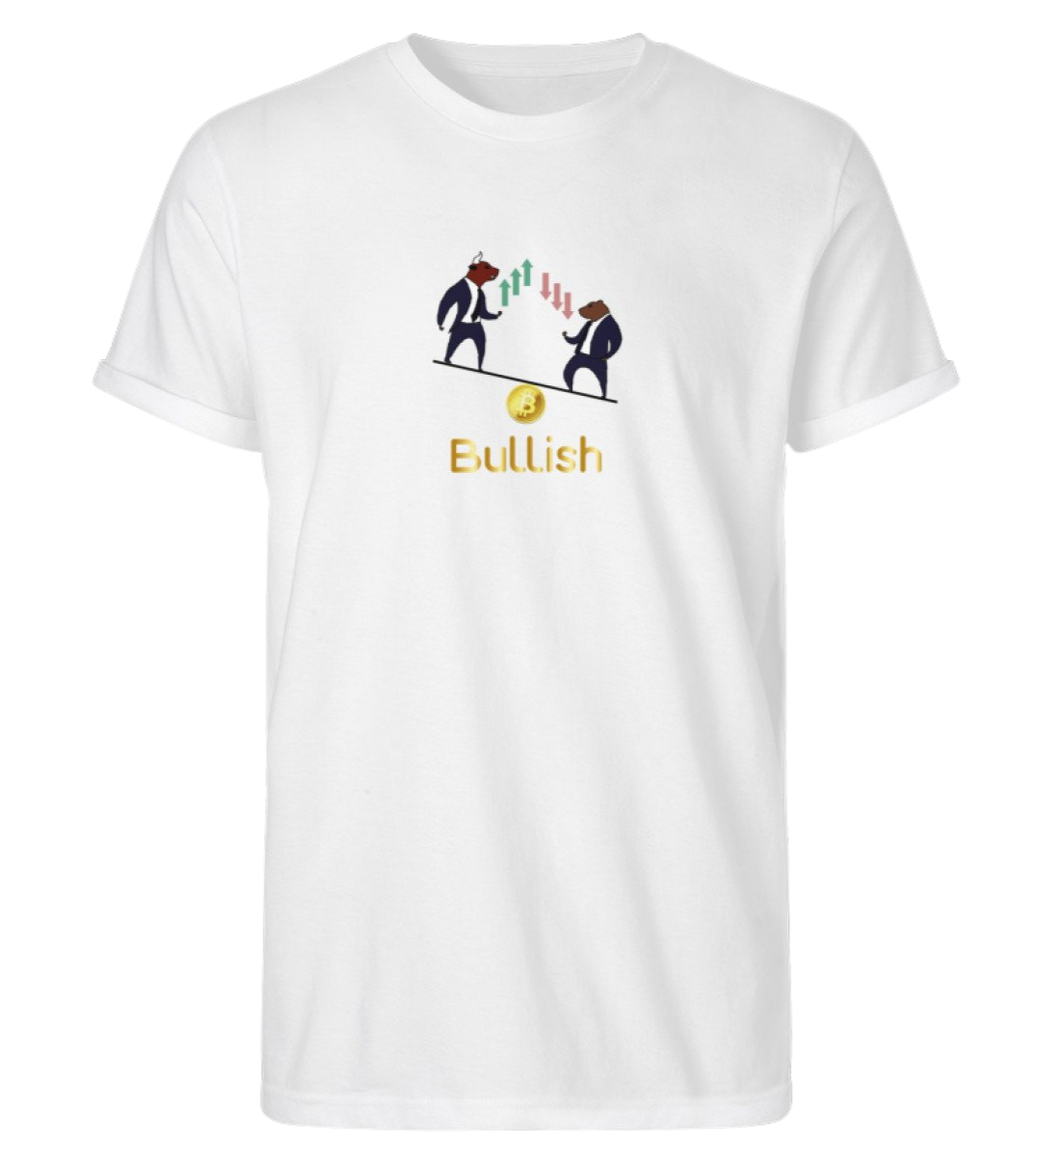 Bullish Rp T-Shirt